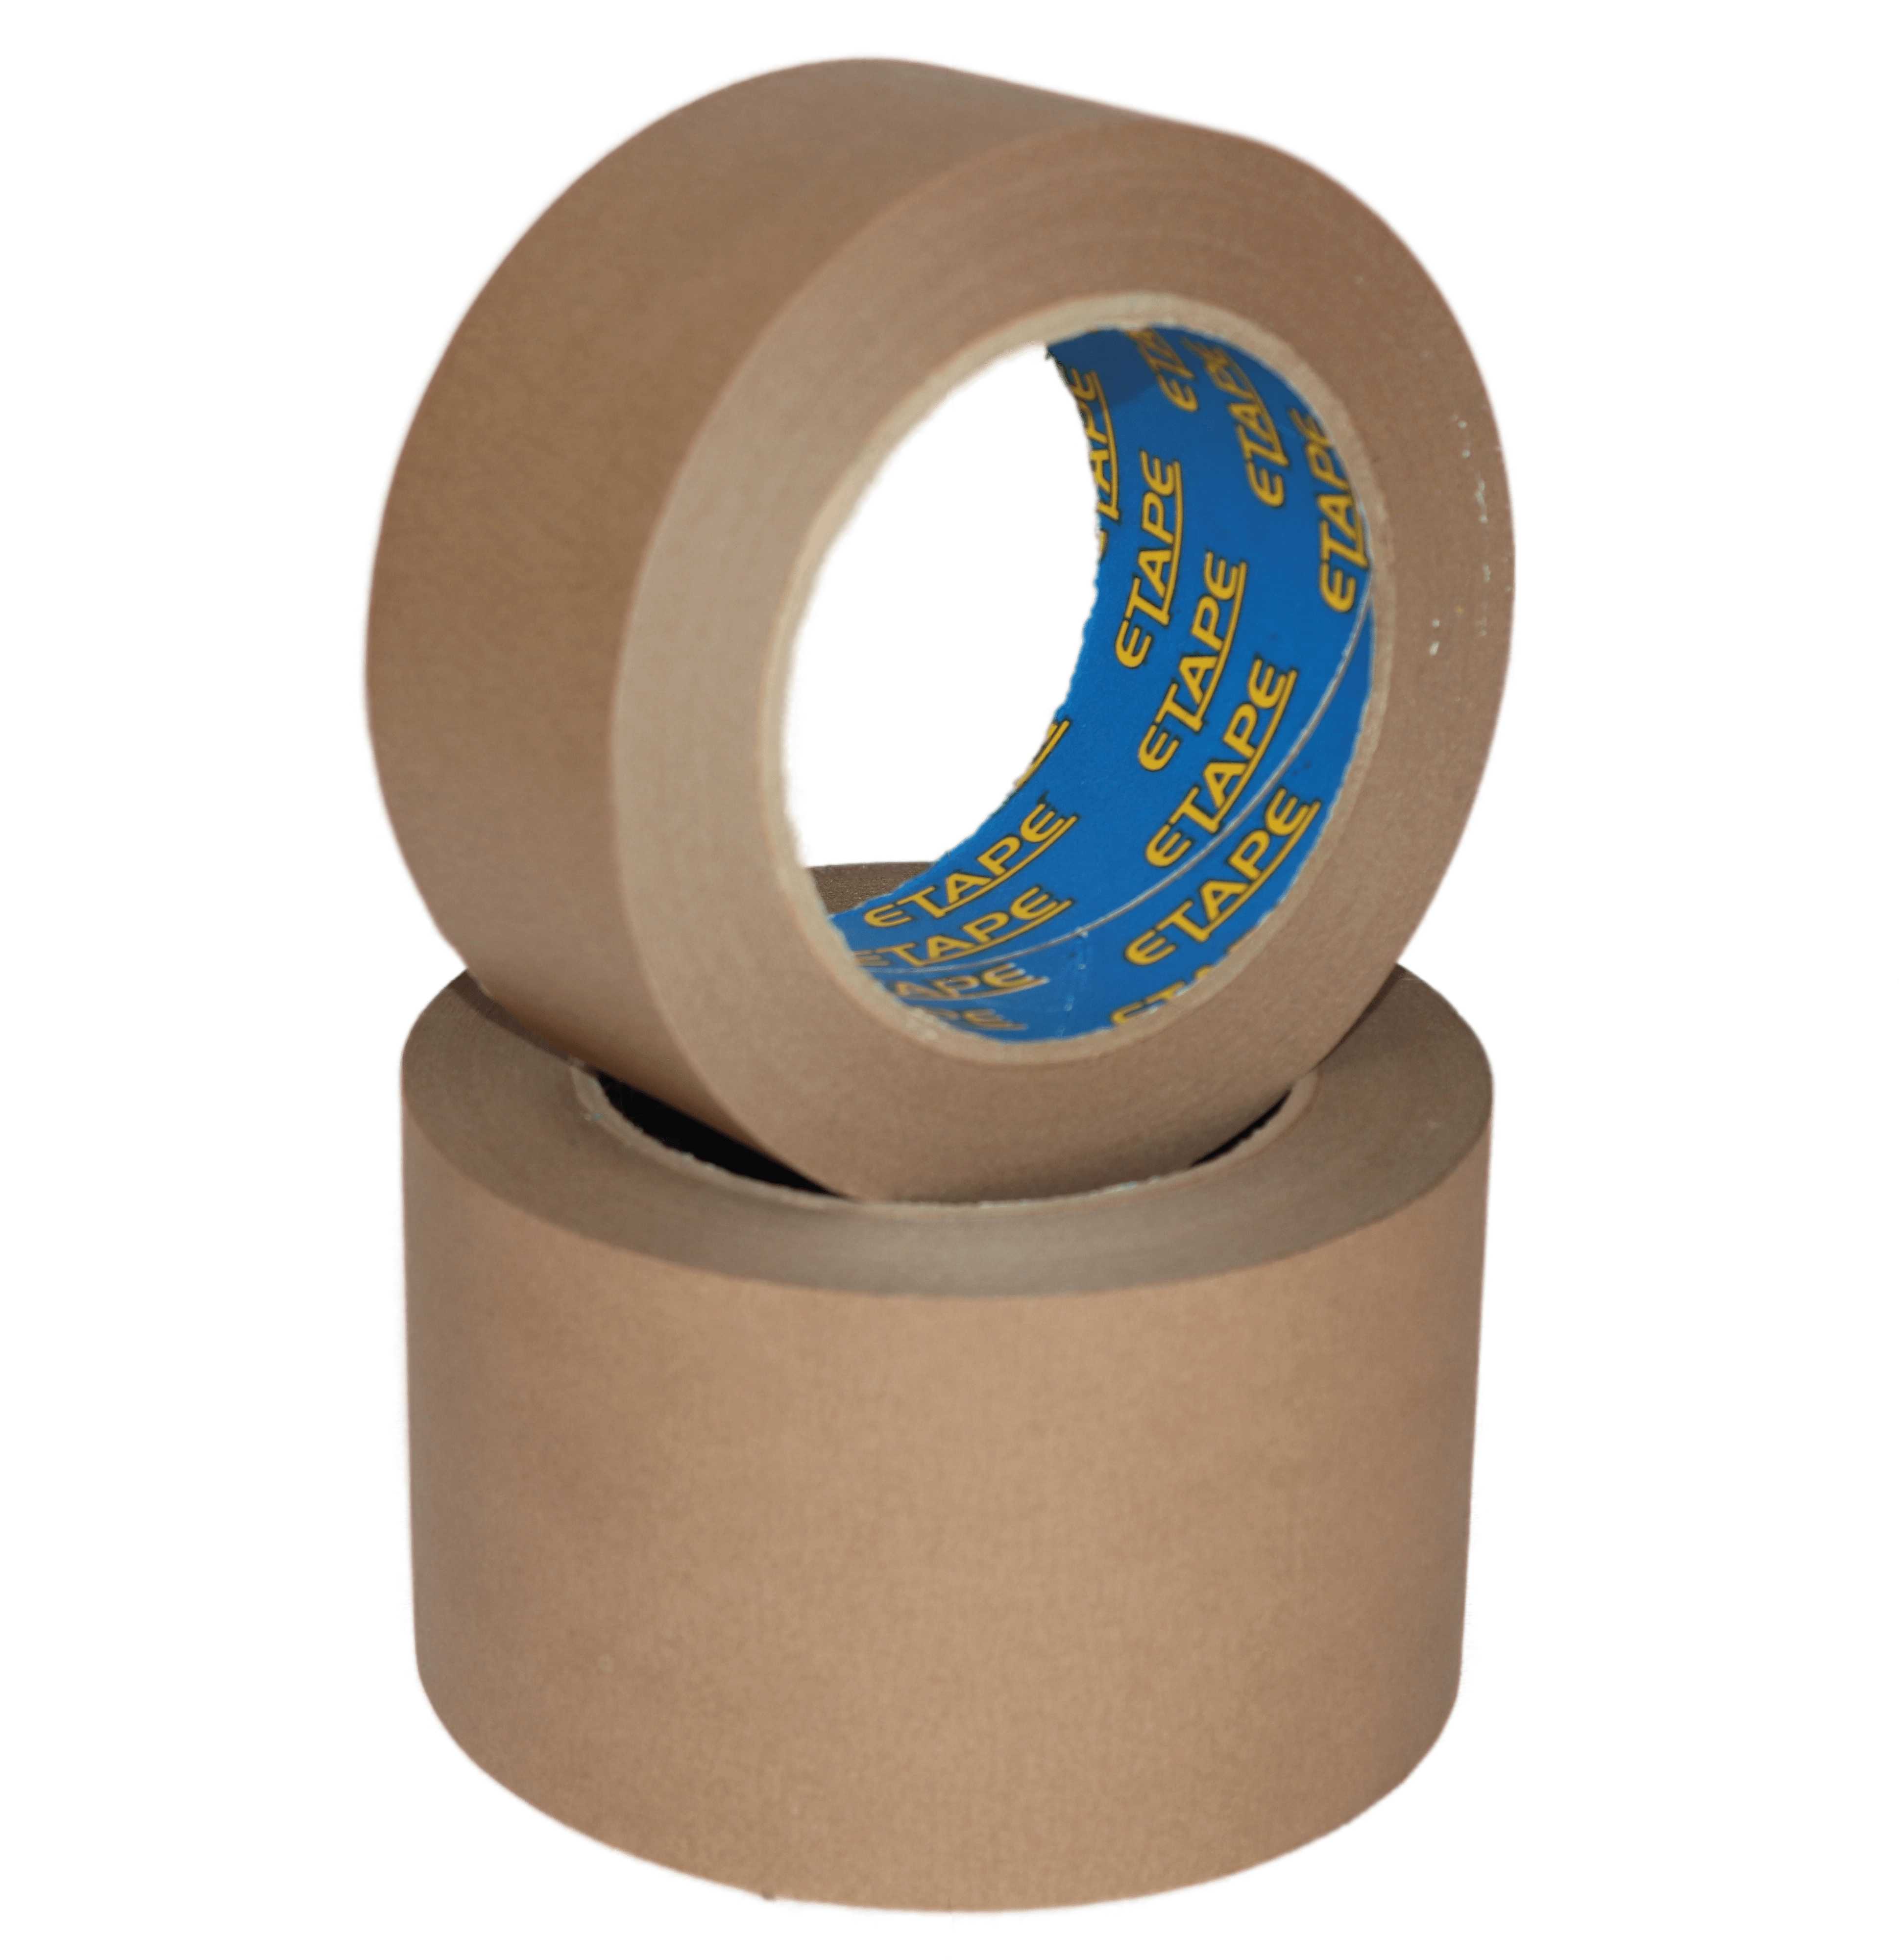 Sure-Seal Packaging Tape